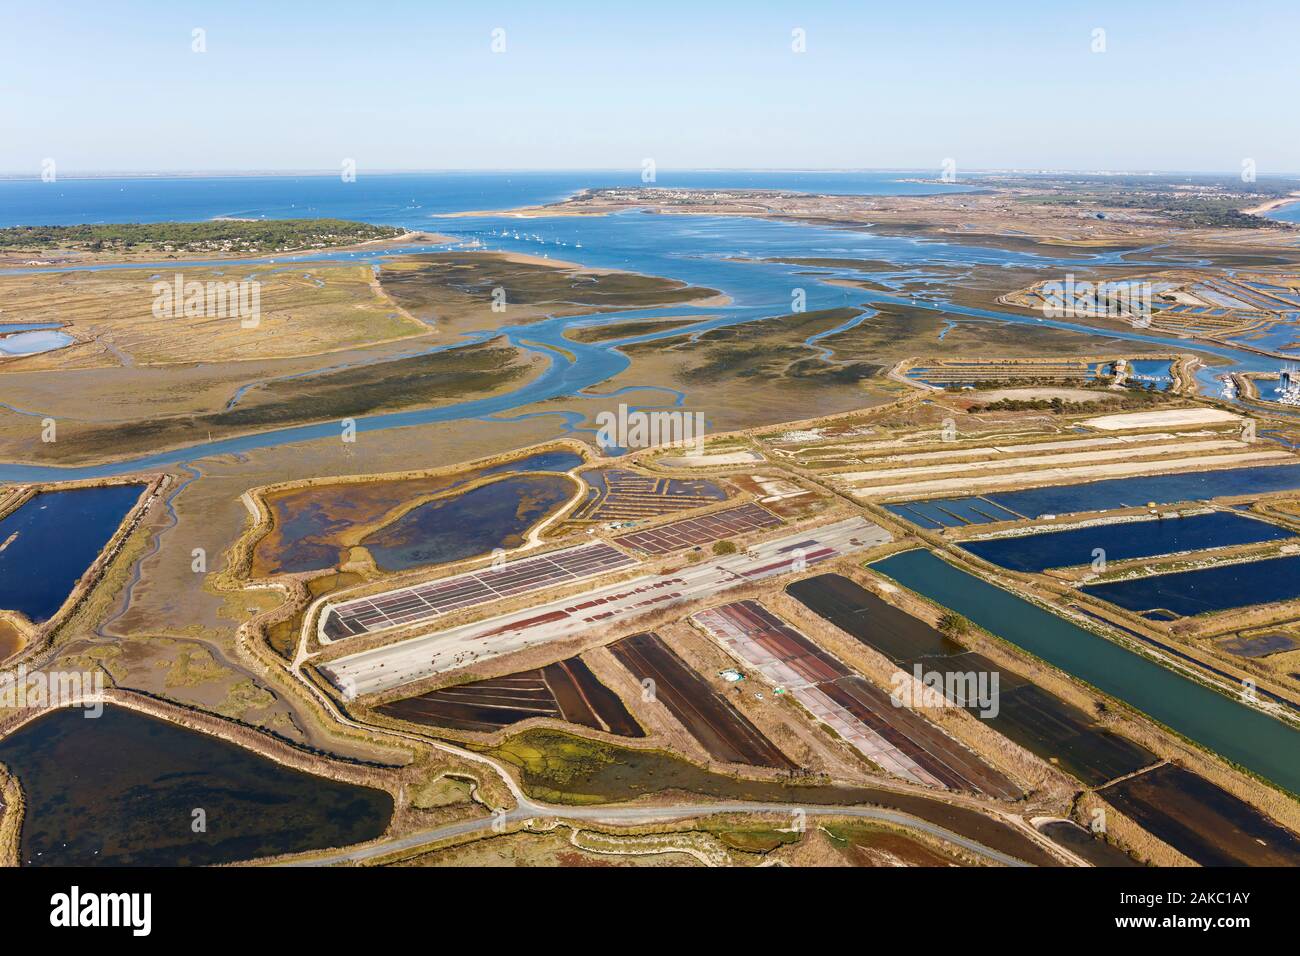 France, Charente Maritime, Ile de Re, Ars en Re, salt marshes (aerial view) Stock Photo